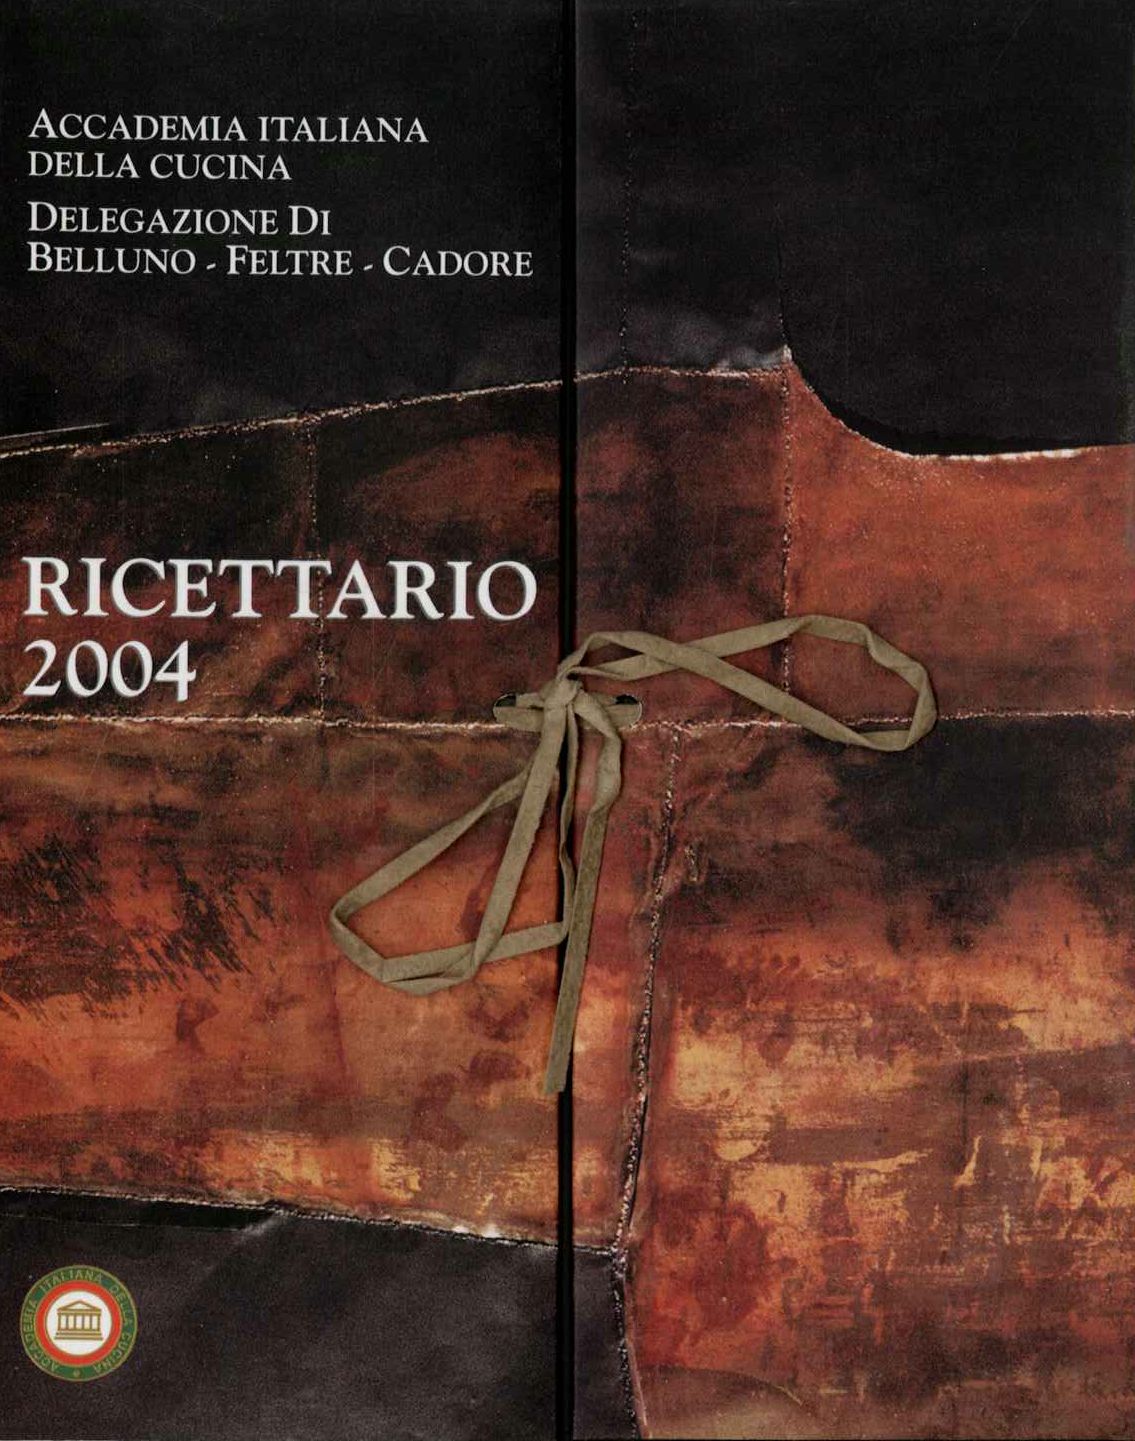 Ricettario 2004 Accademia italiana della cucina